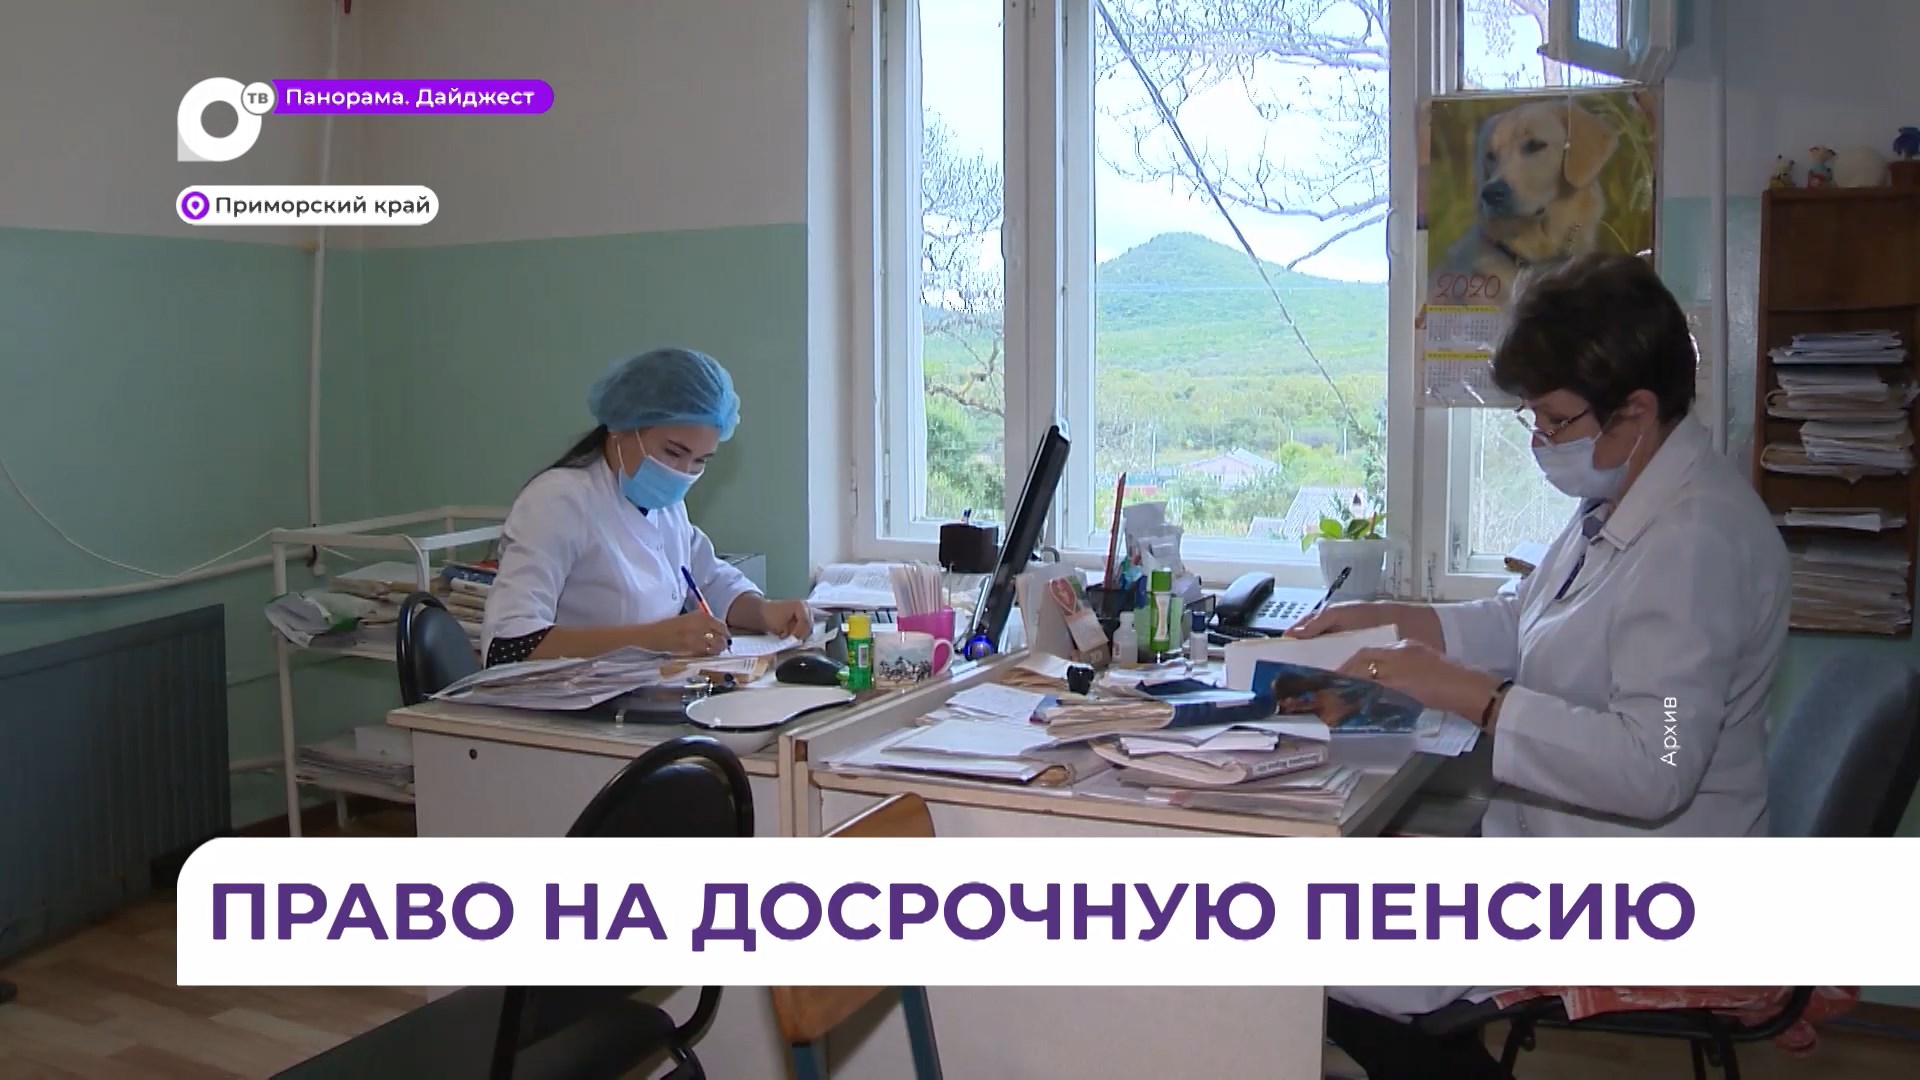 Более 8,5 тысяч медиков в Приморье получили право на досрочную пенсию